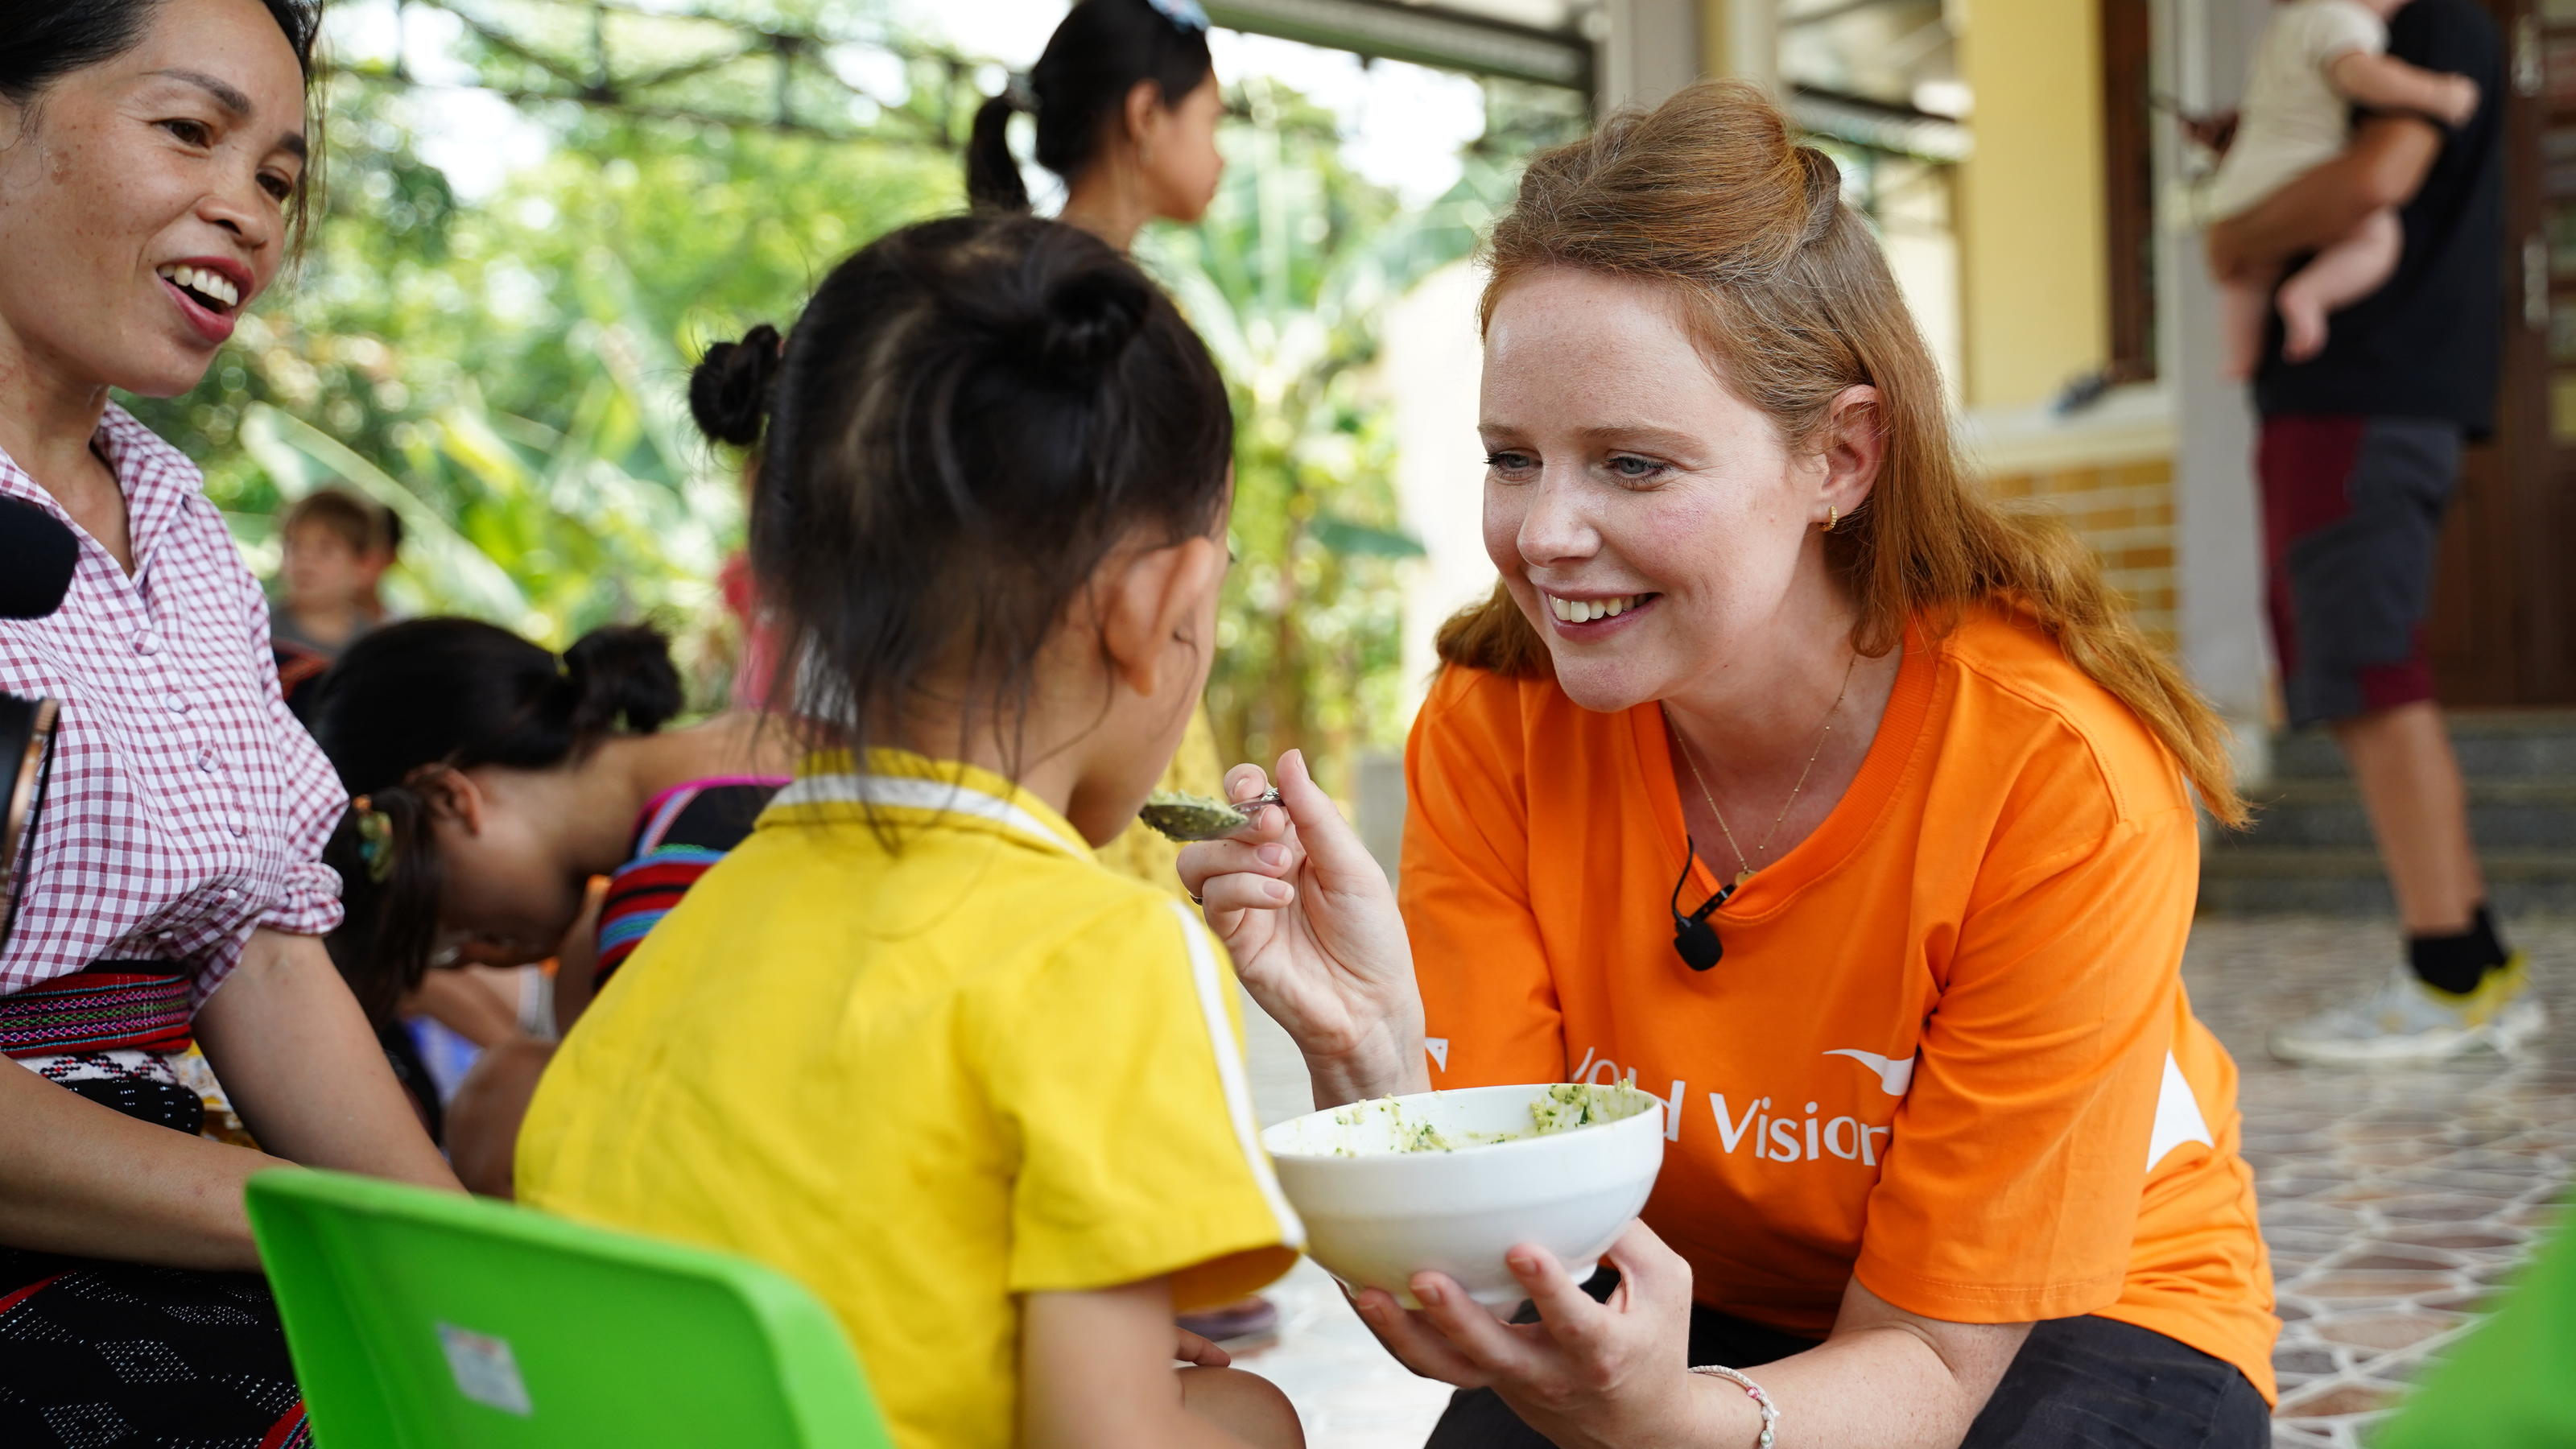                Mit der Organisation "World Vision" hat Olivia Vietnam besucht und dort die Patenschaft für ein kleines Mädchen übernommen.                 